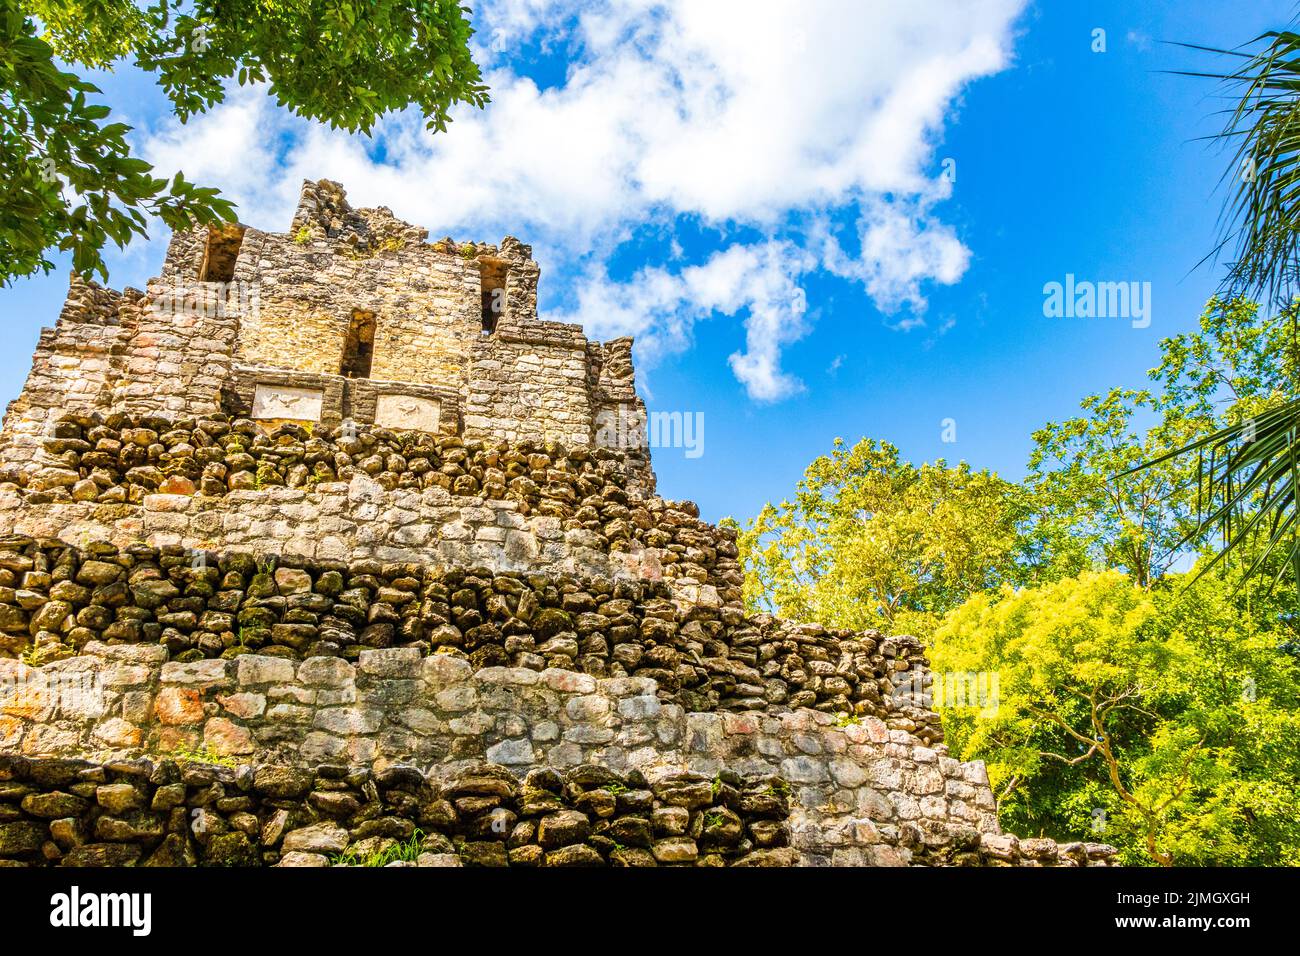 Alte Maya-Stätte mit Tempelruinen Pyramiden Artefakte Muyil Mexiko. Stockfoto